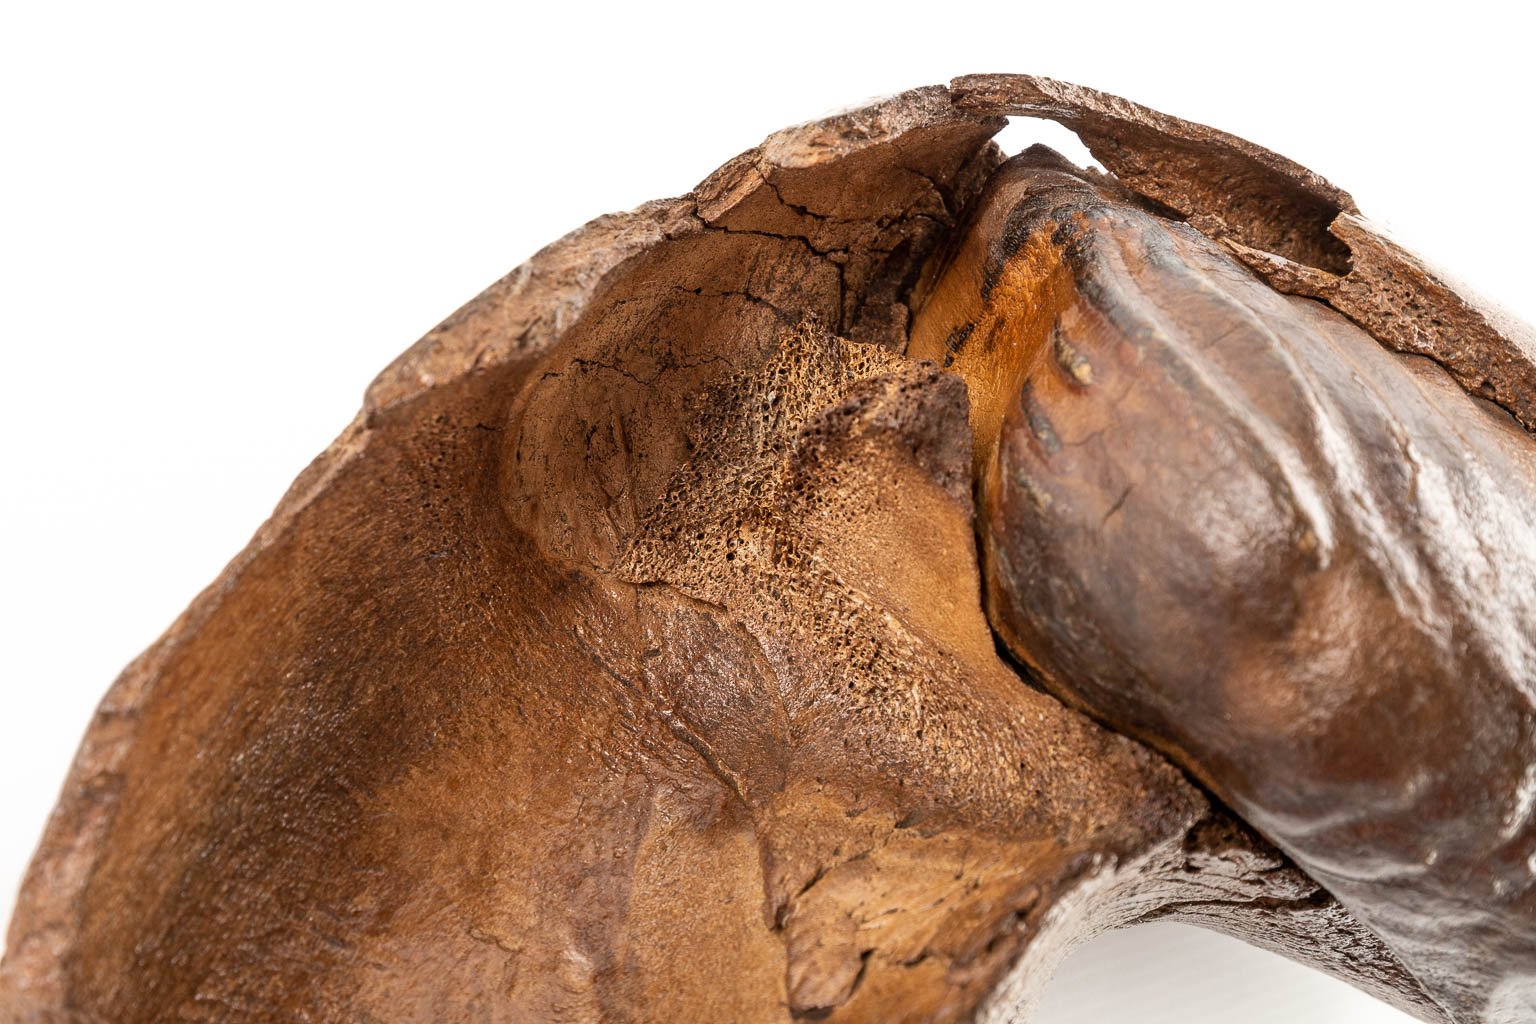 Een grote mammoet tand met fragment van een kaak. (D:15 x W:36 x H:25 cm)